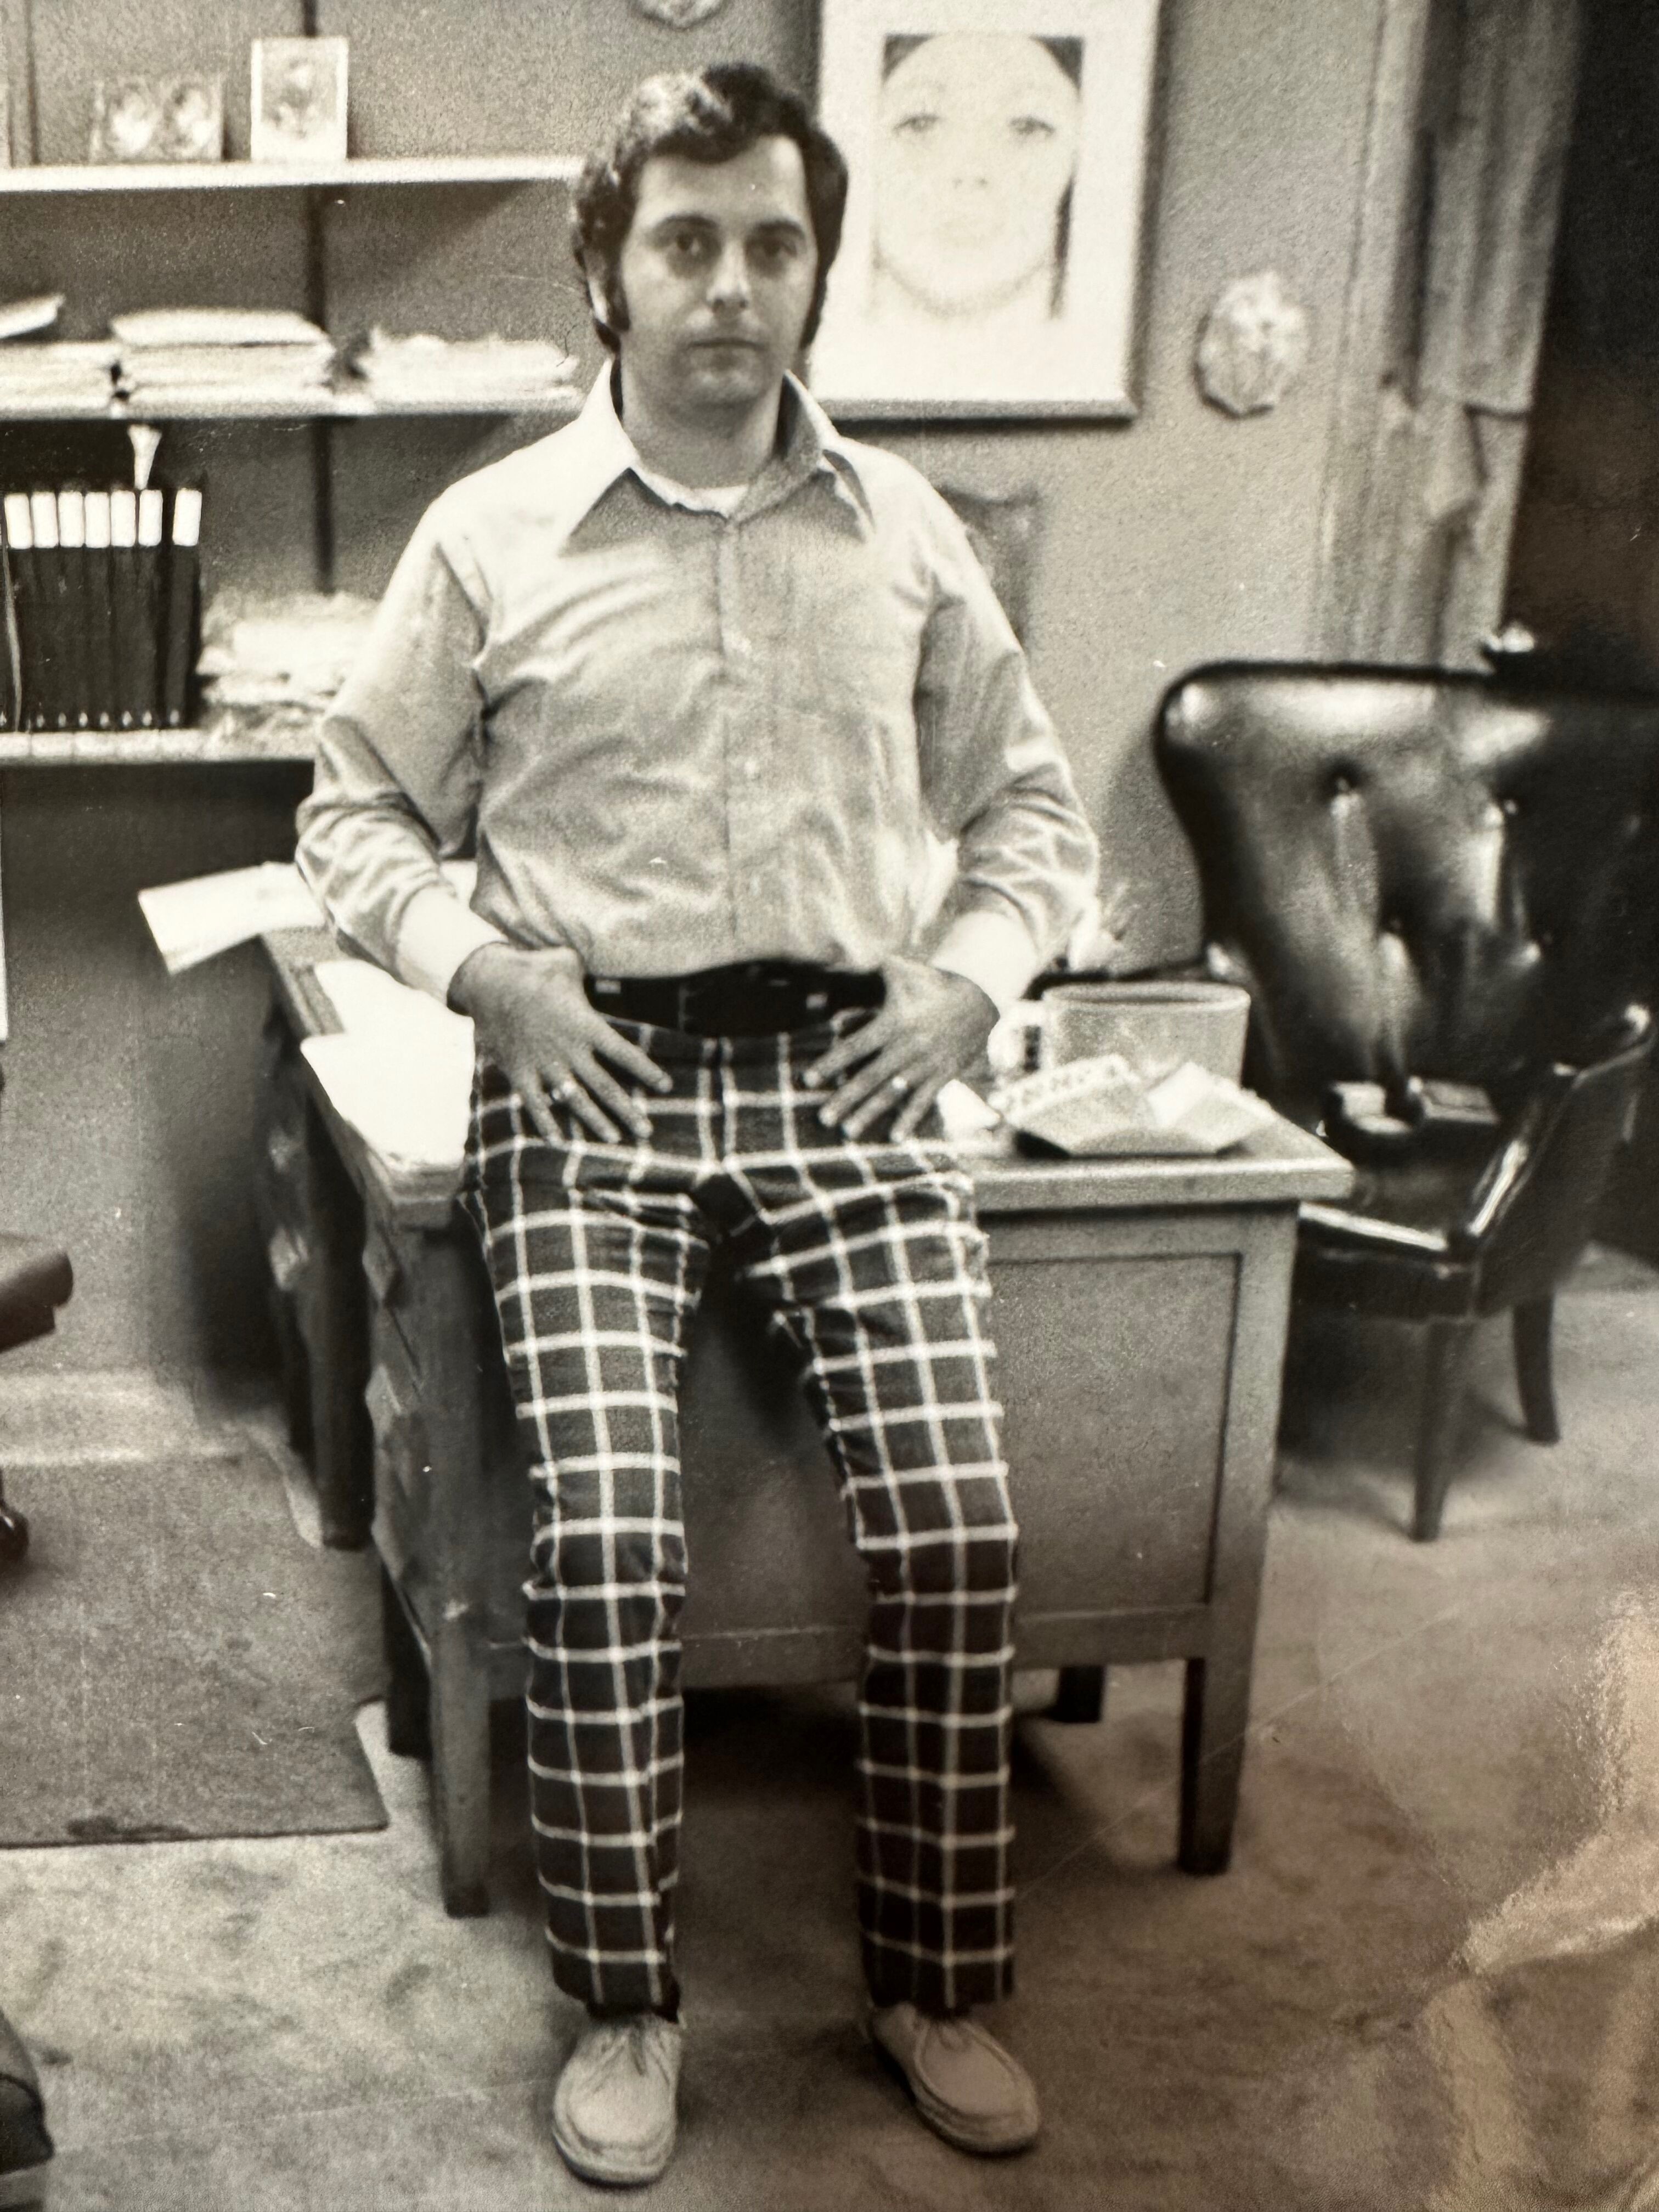 Allan at Bressler Uniforms, 1975